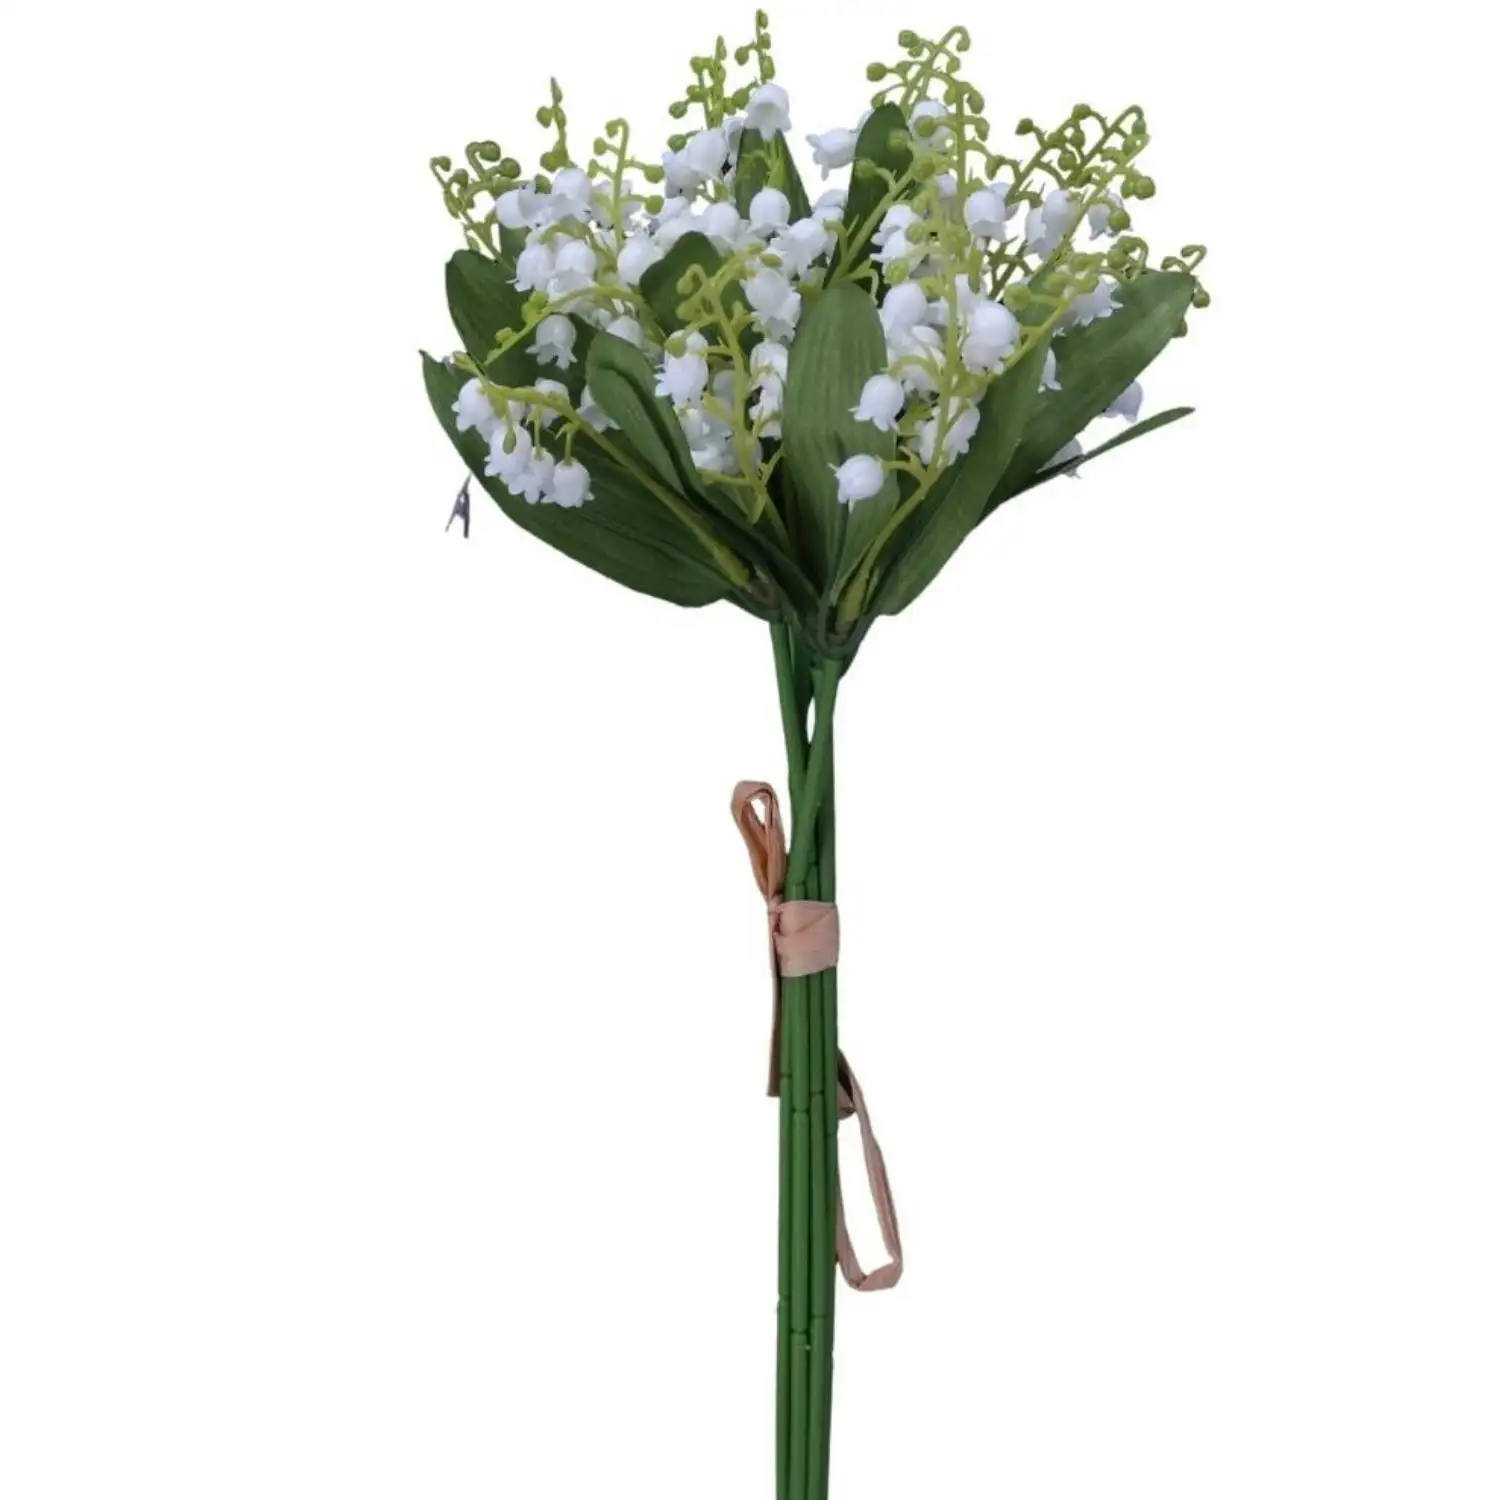 ช่อดอก Convallaria จำลองช่อดอกไม้ระฆังดอกไม้ประดิษฐ์ช่อดอกลิลลี่ขนาดเล็กของหุบเขาดอกไม้ faux